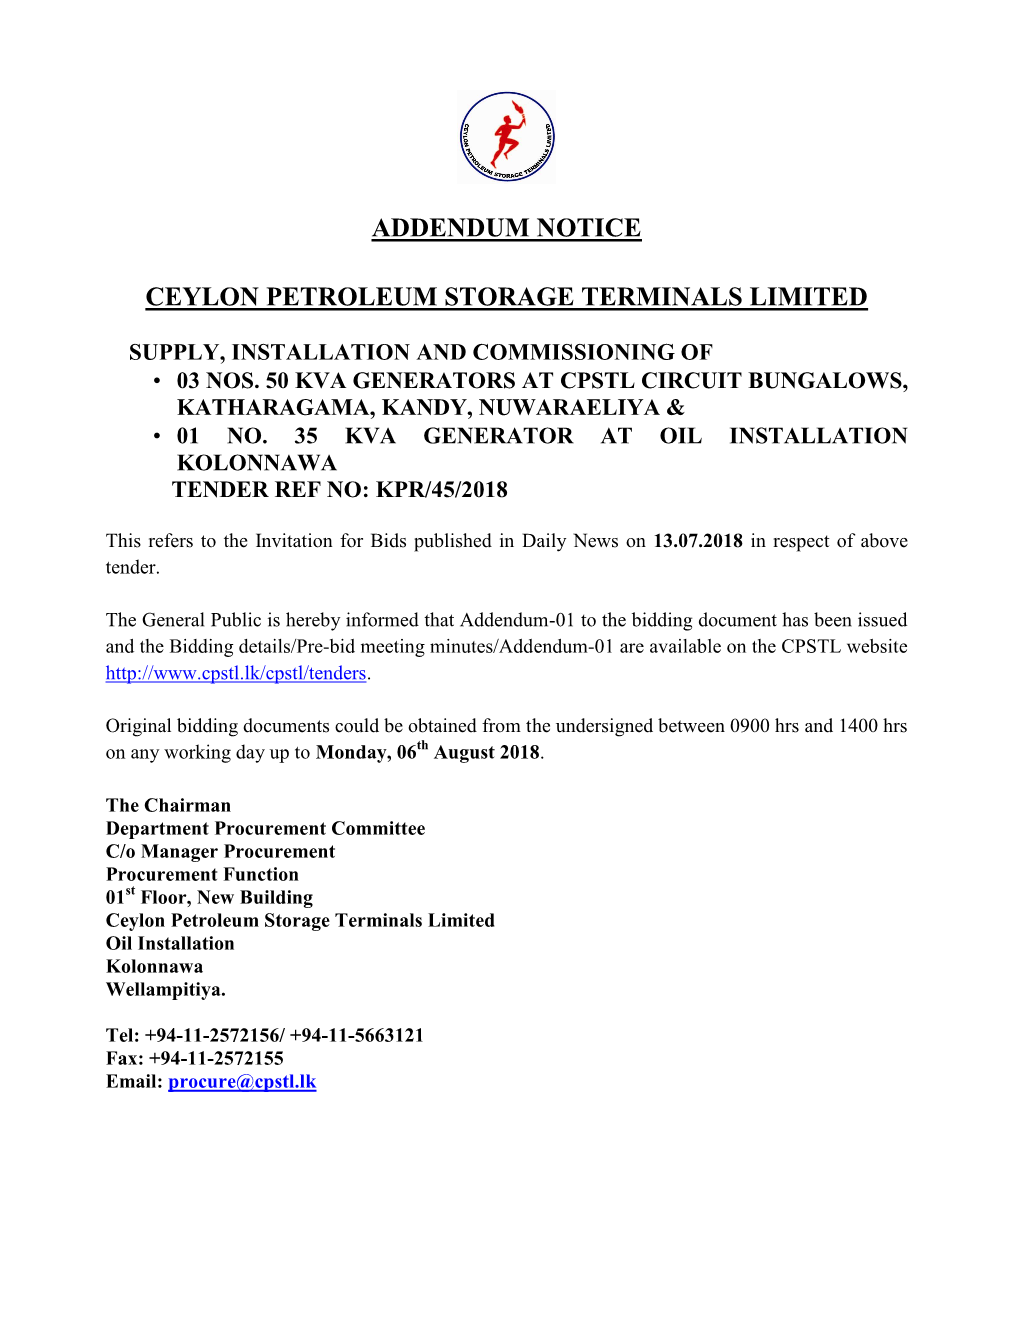 Addendum Notice Ceylon Petroleum Storage Terminals Limited